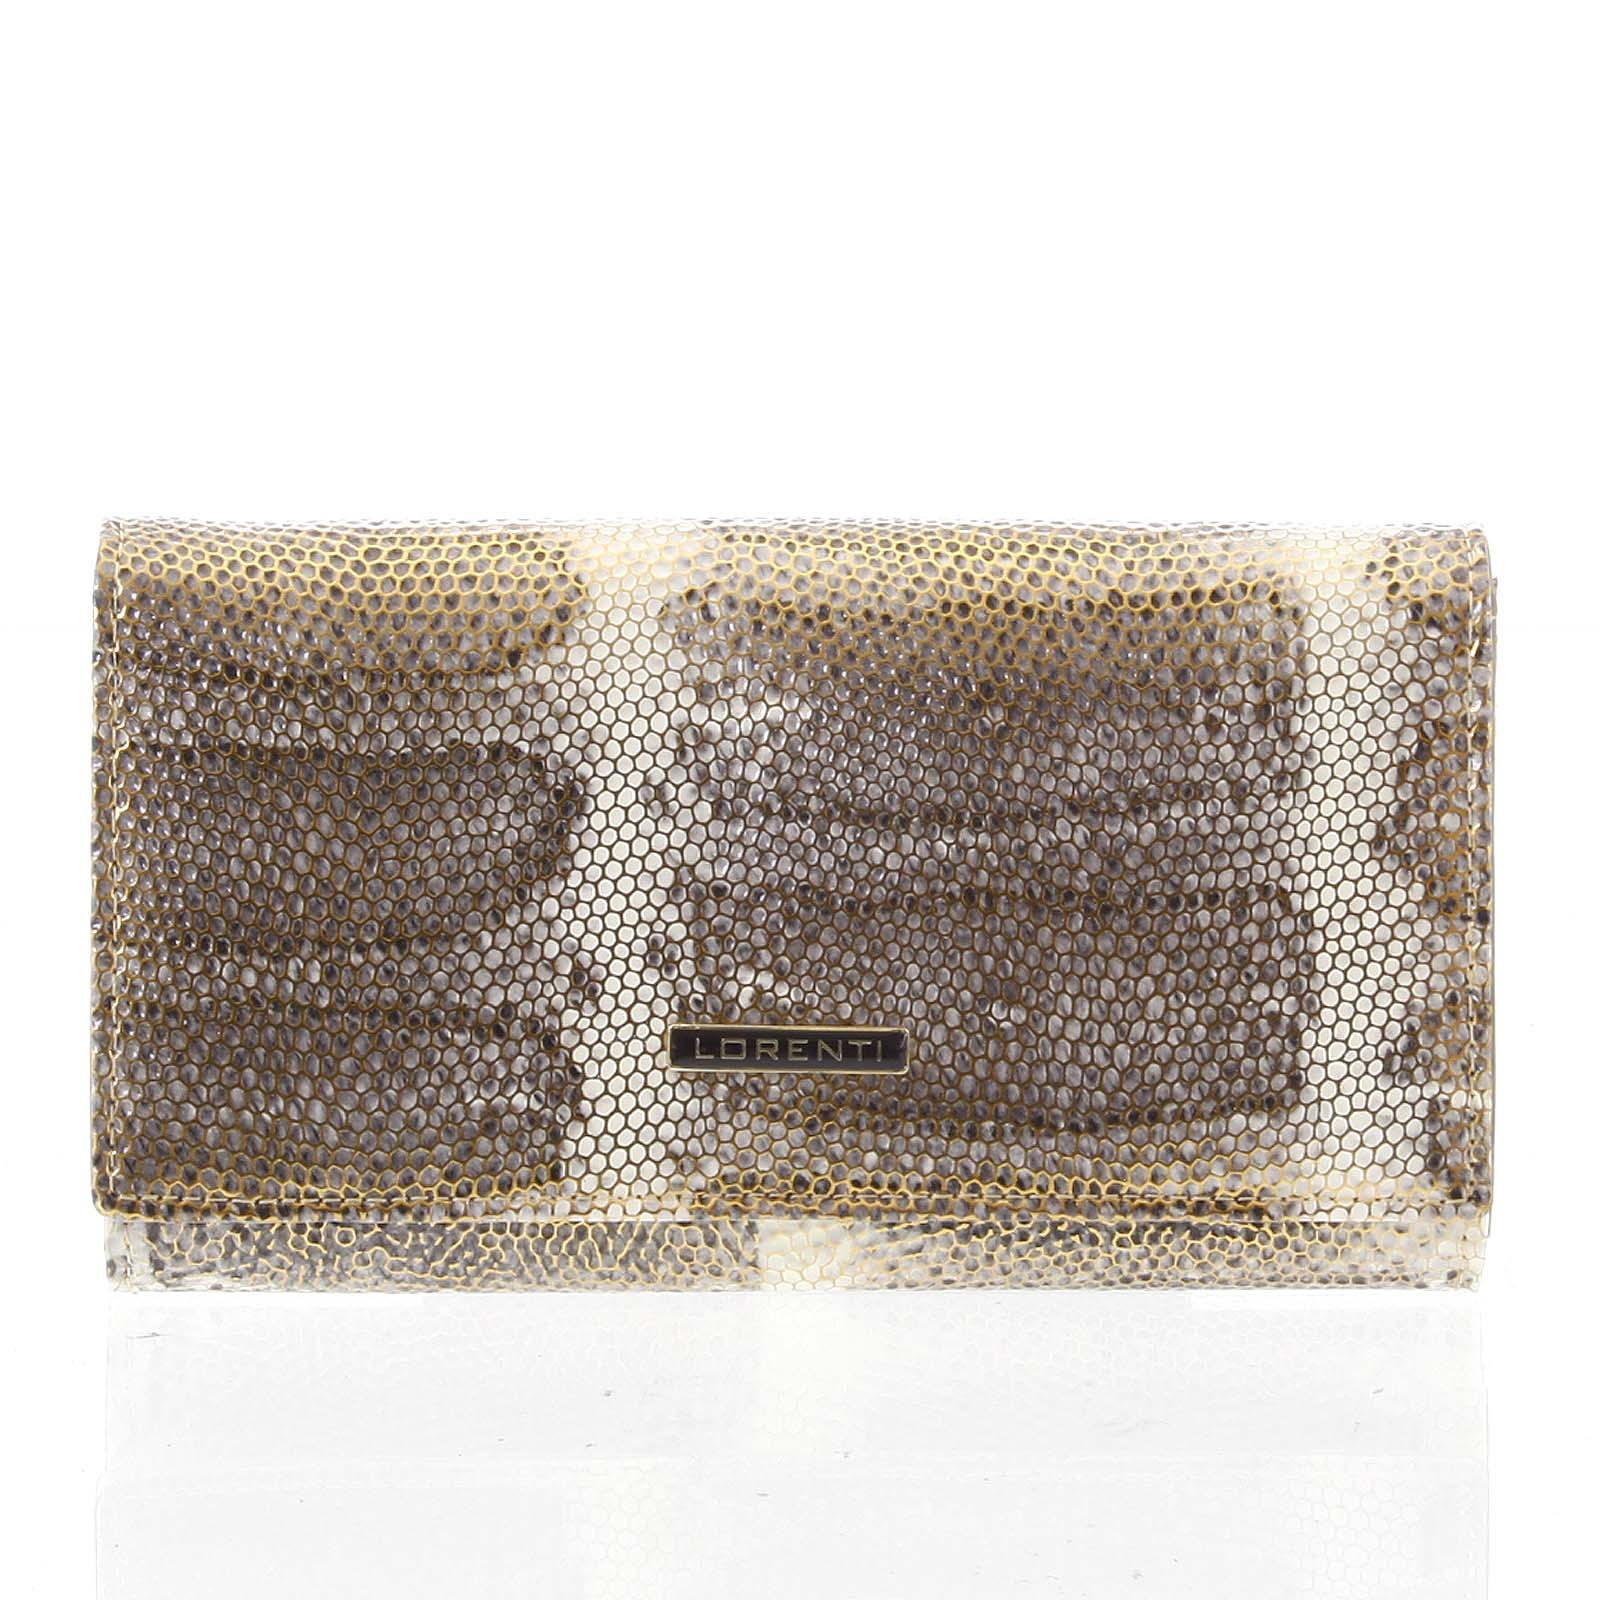 Luxusná hadí kožená zlatá peňaženka s odleskom - Lorenti 114SH